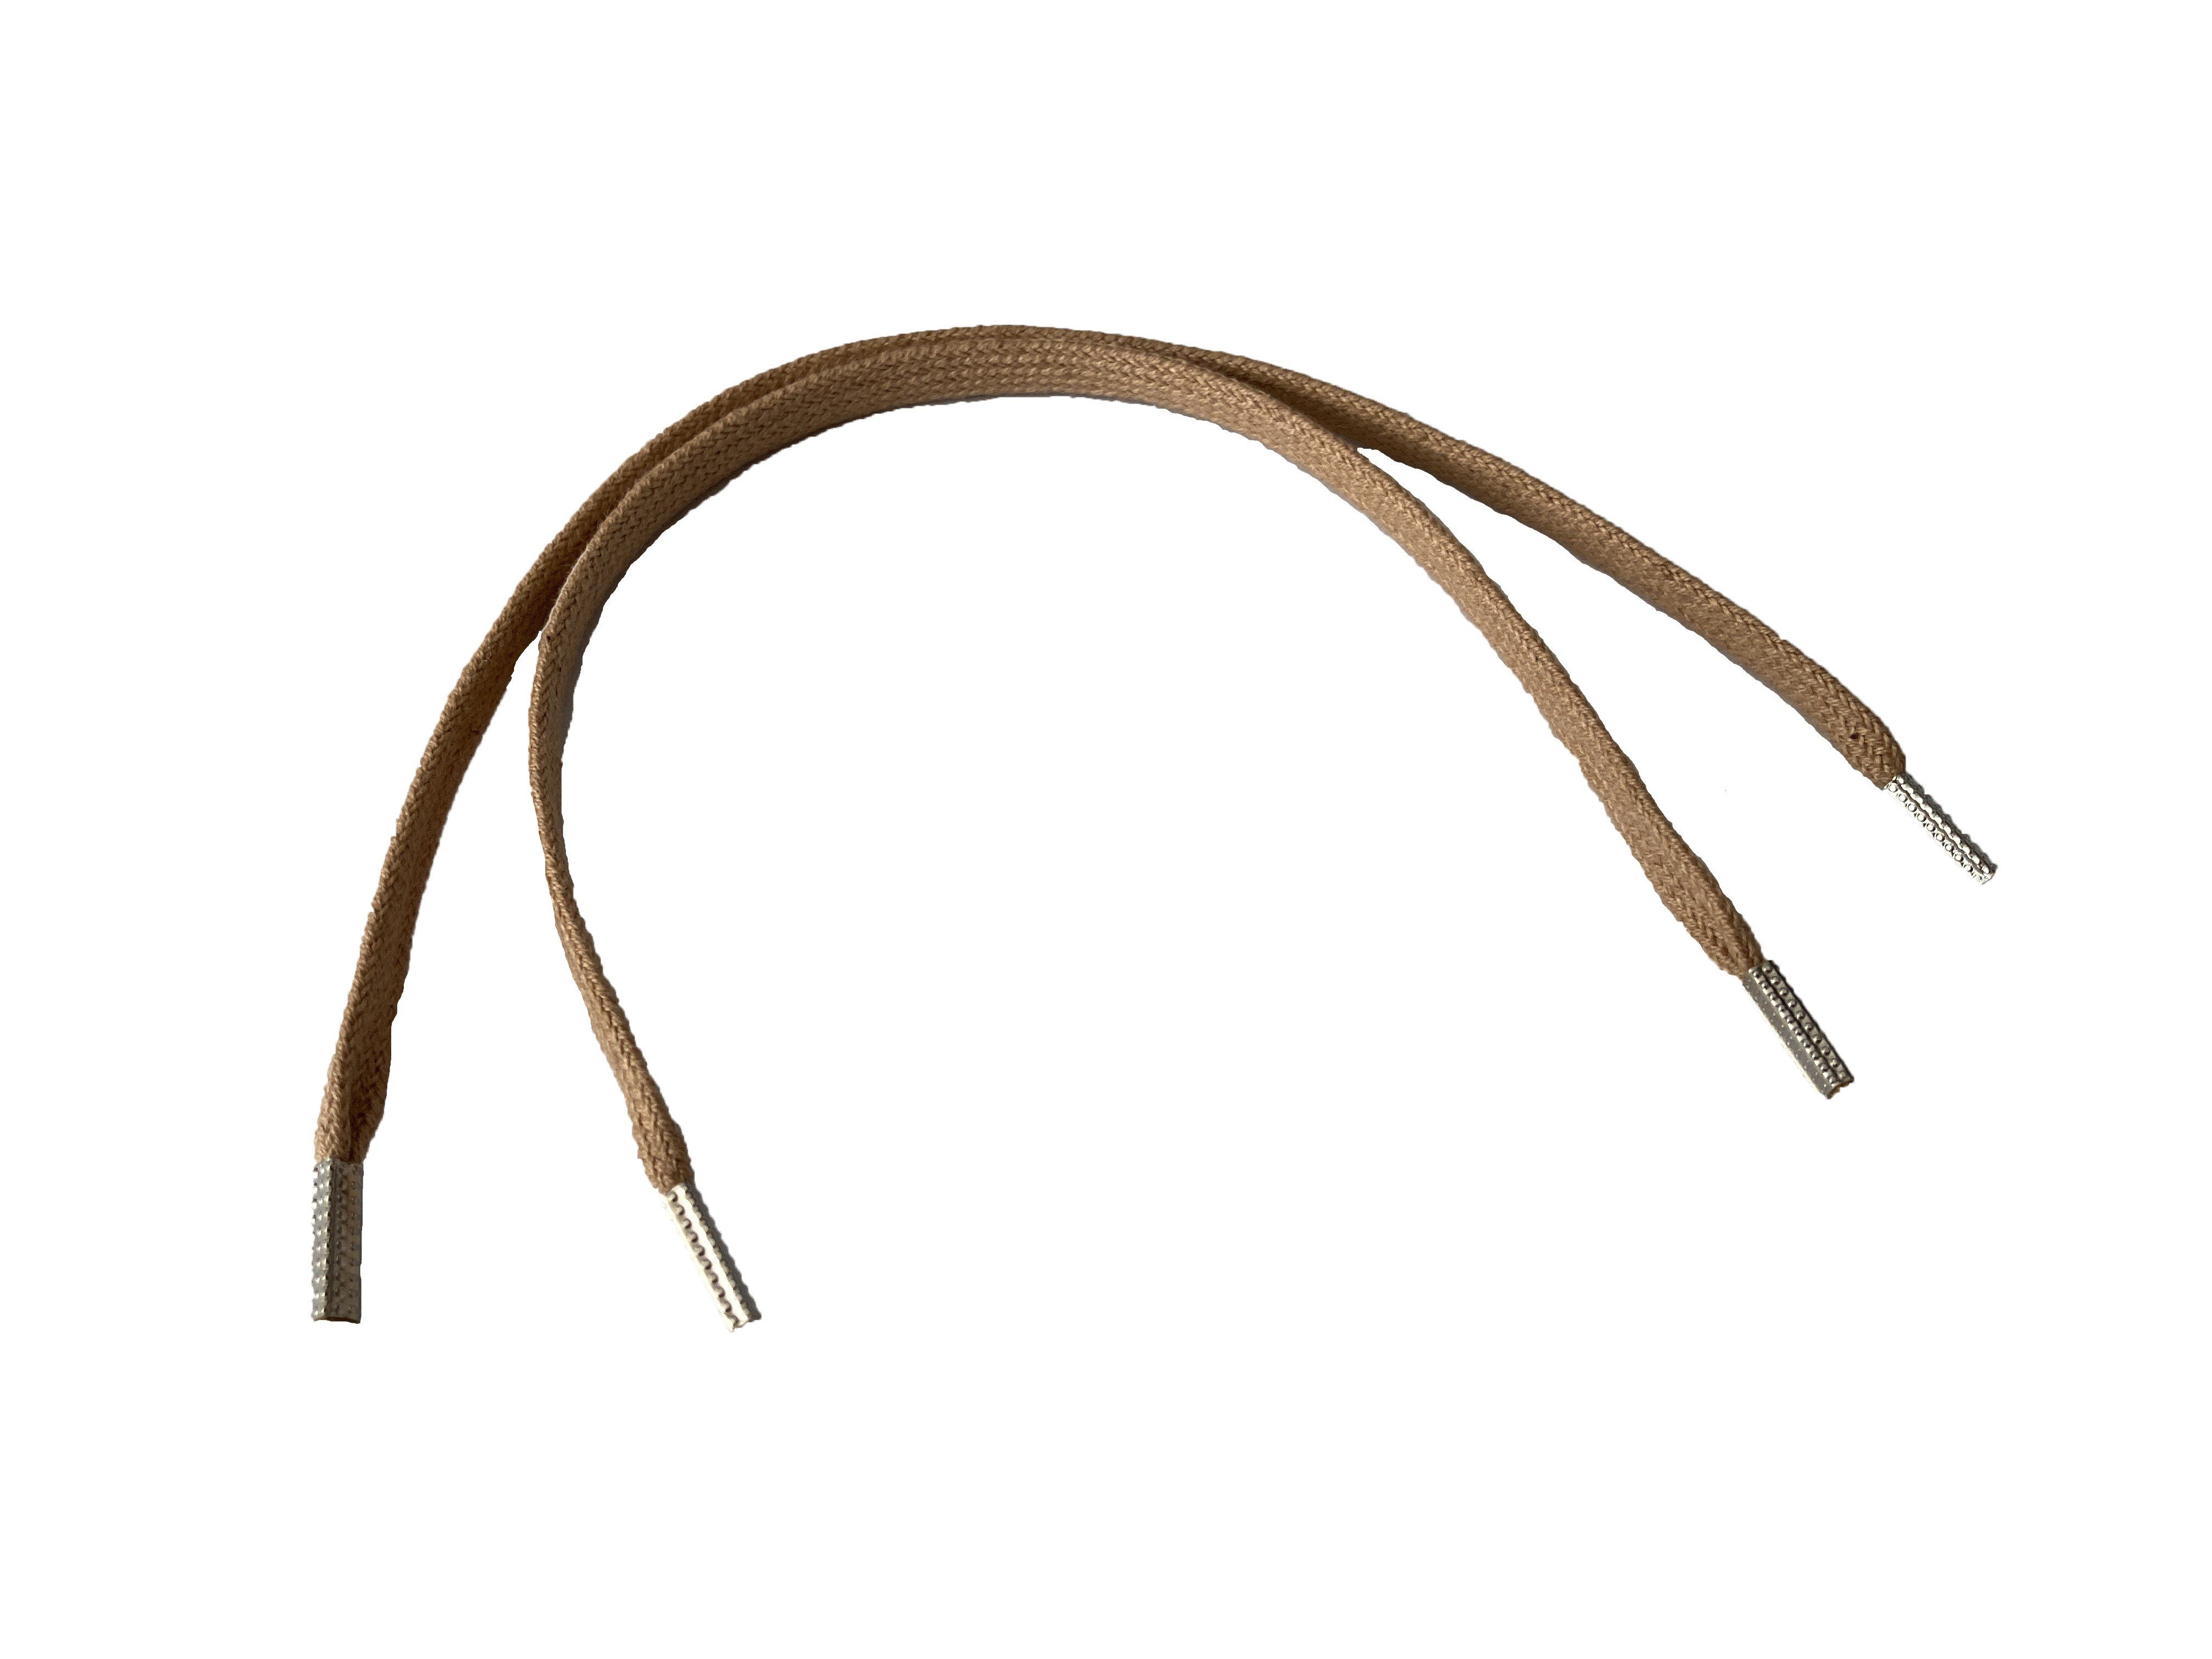 Rema Schnürsenkel Rema Schnürsenkel Camel - flach - ca. 5 mm schmal für Sie nach Wunschlänge geschnitten und mit Metallenden versehen